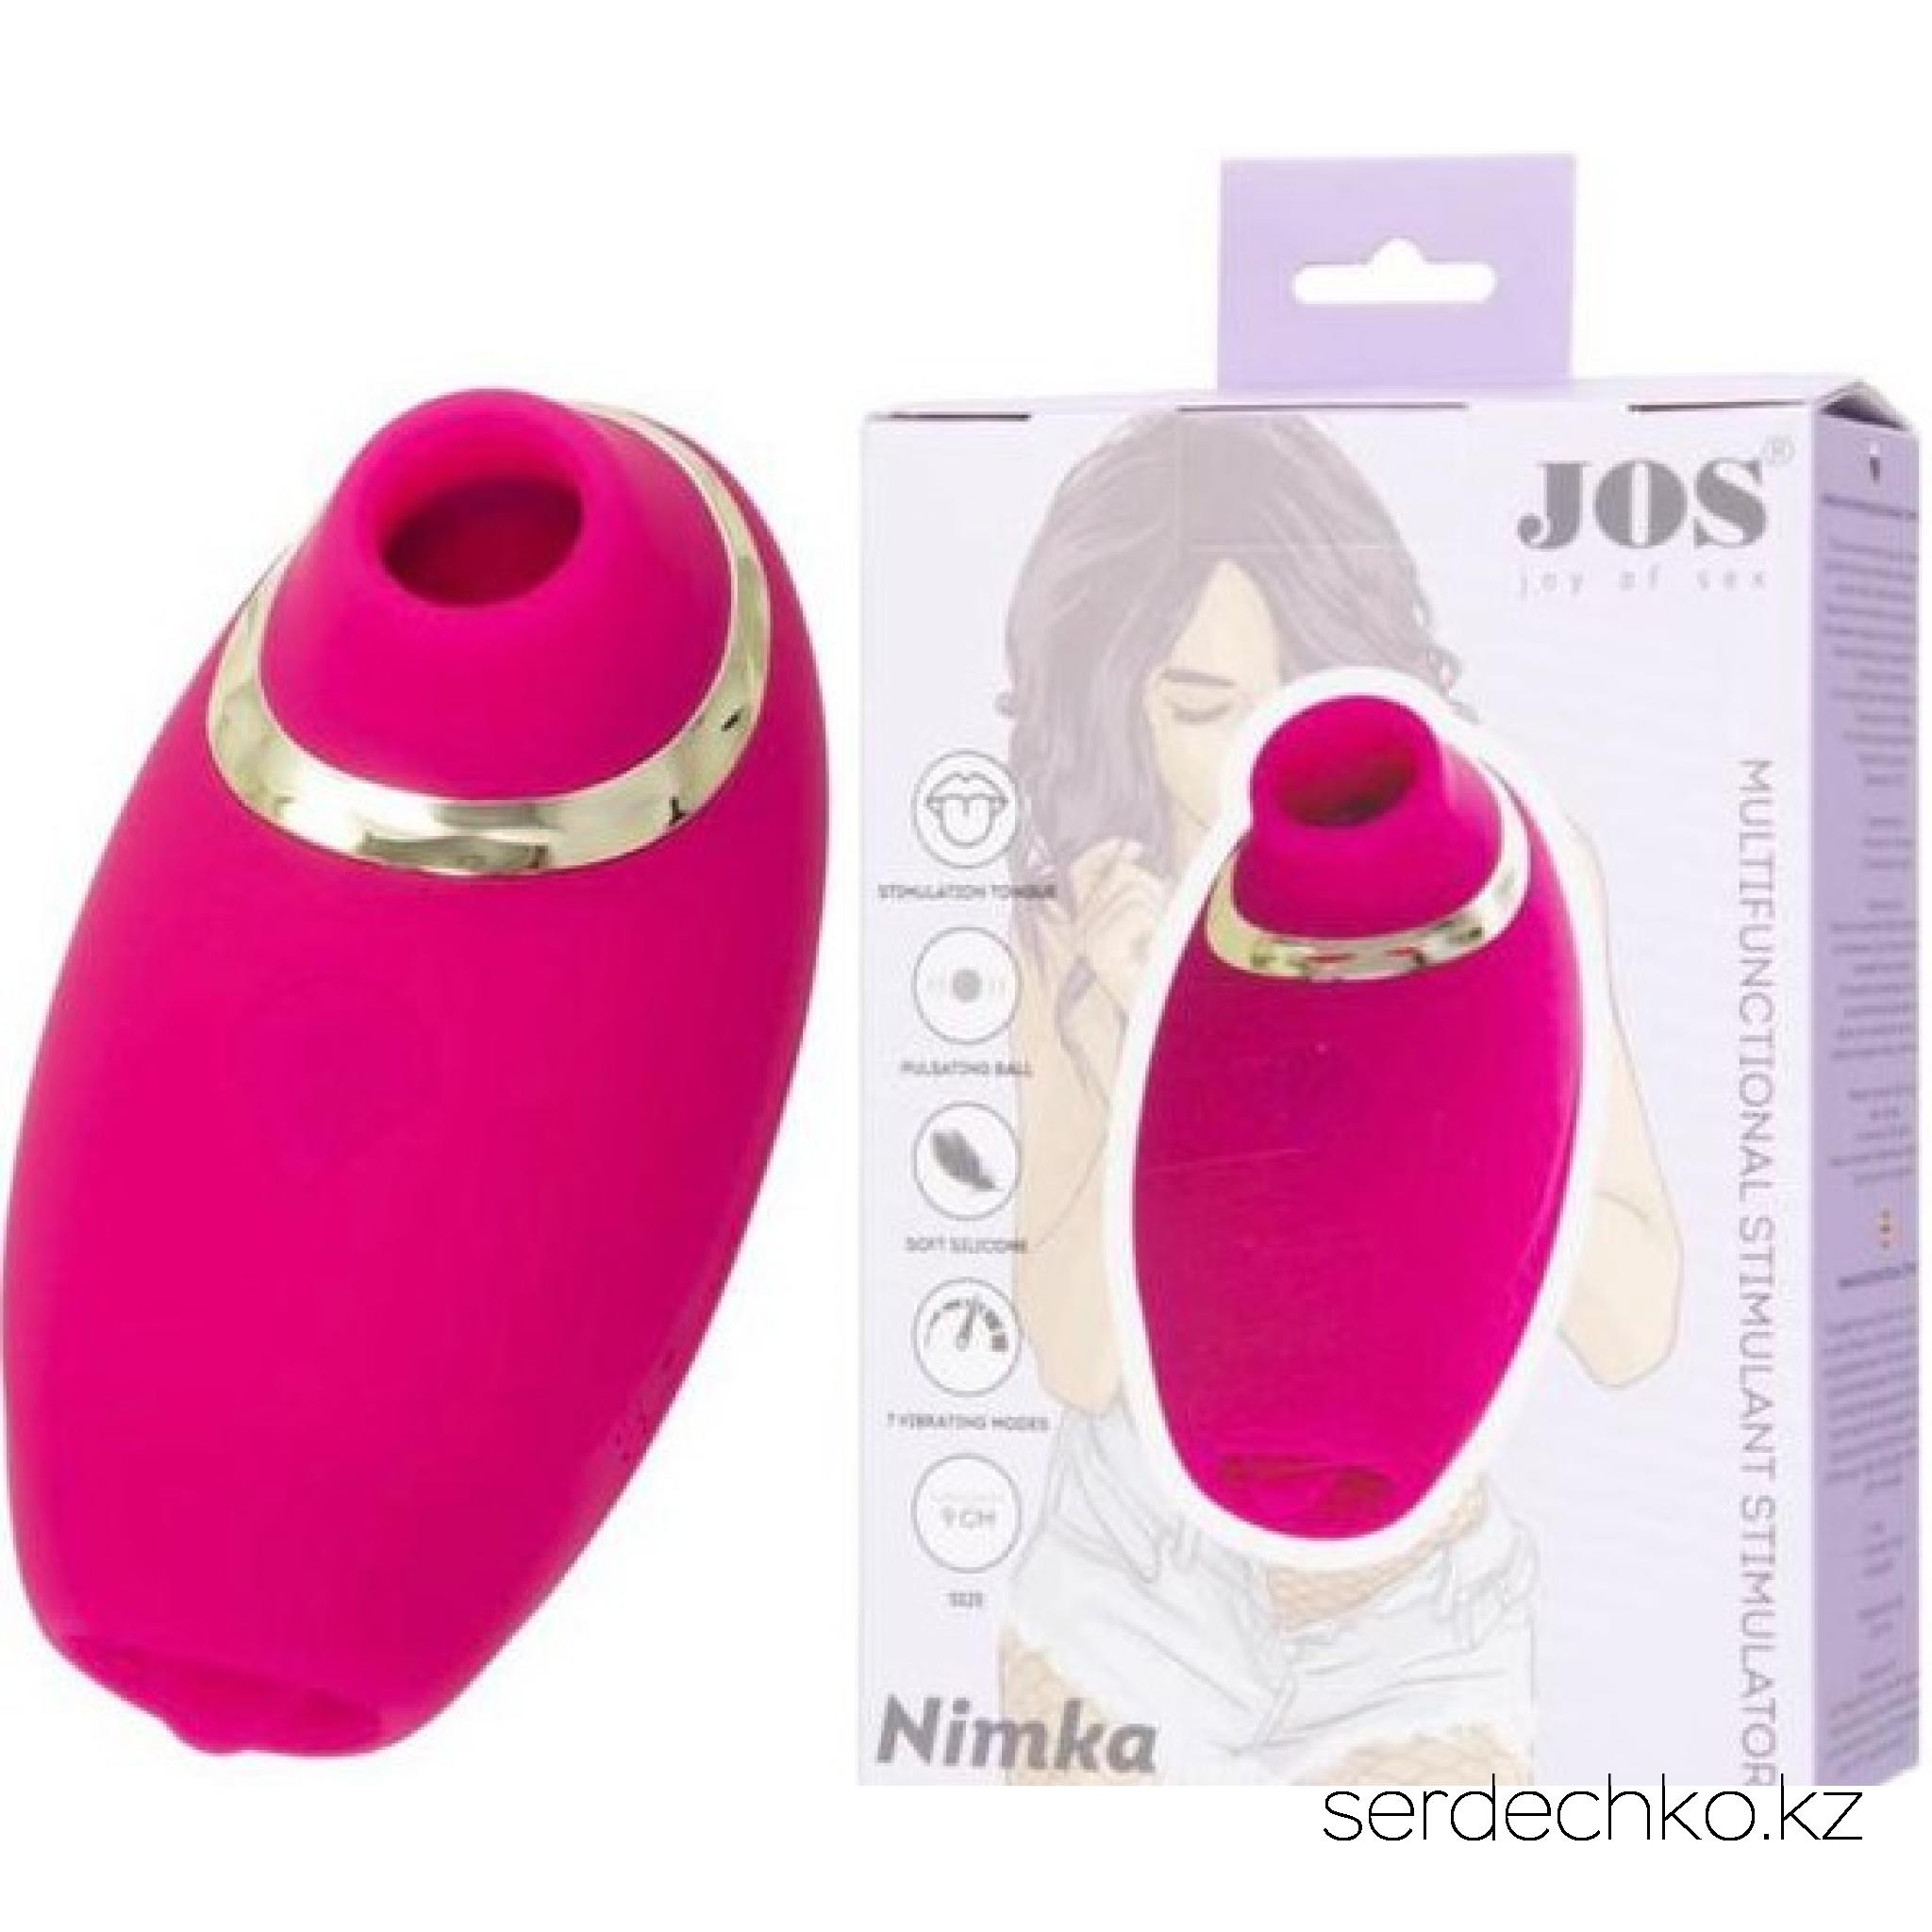 Многофункциональный стимулятор эрогенных зон JOS Nimka, силикон, розовый, 9 см, 
	NIMKA - это идеальный мультифункциональный стимулятор для самоудовлетворения и прелюдий с партнером. В этом малыше множество функций для вашего удовольствия! NIMKA изготовлен из высококачественного бархатистого силикона. Вакуум-волновая стимуляция клитора доставит яркий и гарантированный оргазм.

	Язычок на кончике игрушки и пульсирующий шарик на основании созданы для стимуляции эрогенных зон. Стимулируйте ваши любимые эрогенный зоны тремя разными способами.

	
		
			7 режимов работы
	
	
		
			Язычок для стимуляции
	
	
		
			Пульсирующий шарик
	
	
		
			Время до полной зарядки - 2 часа
	
	
		
			Время работы - 1 час
	
	
		
			Заряжается от USB
	

